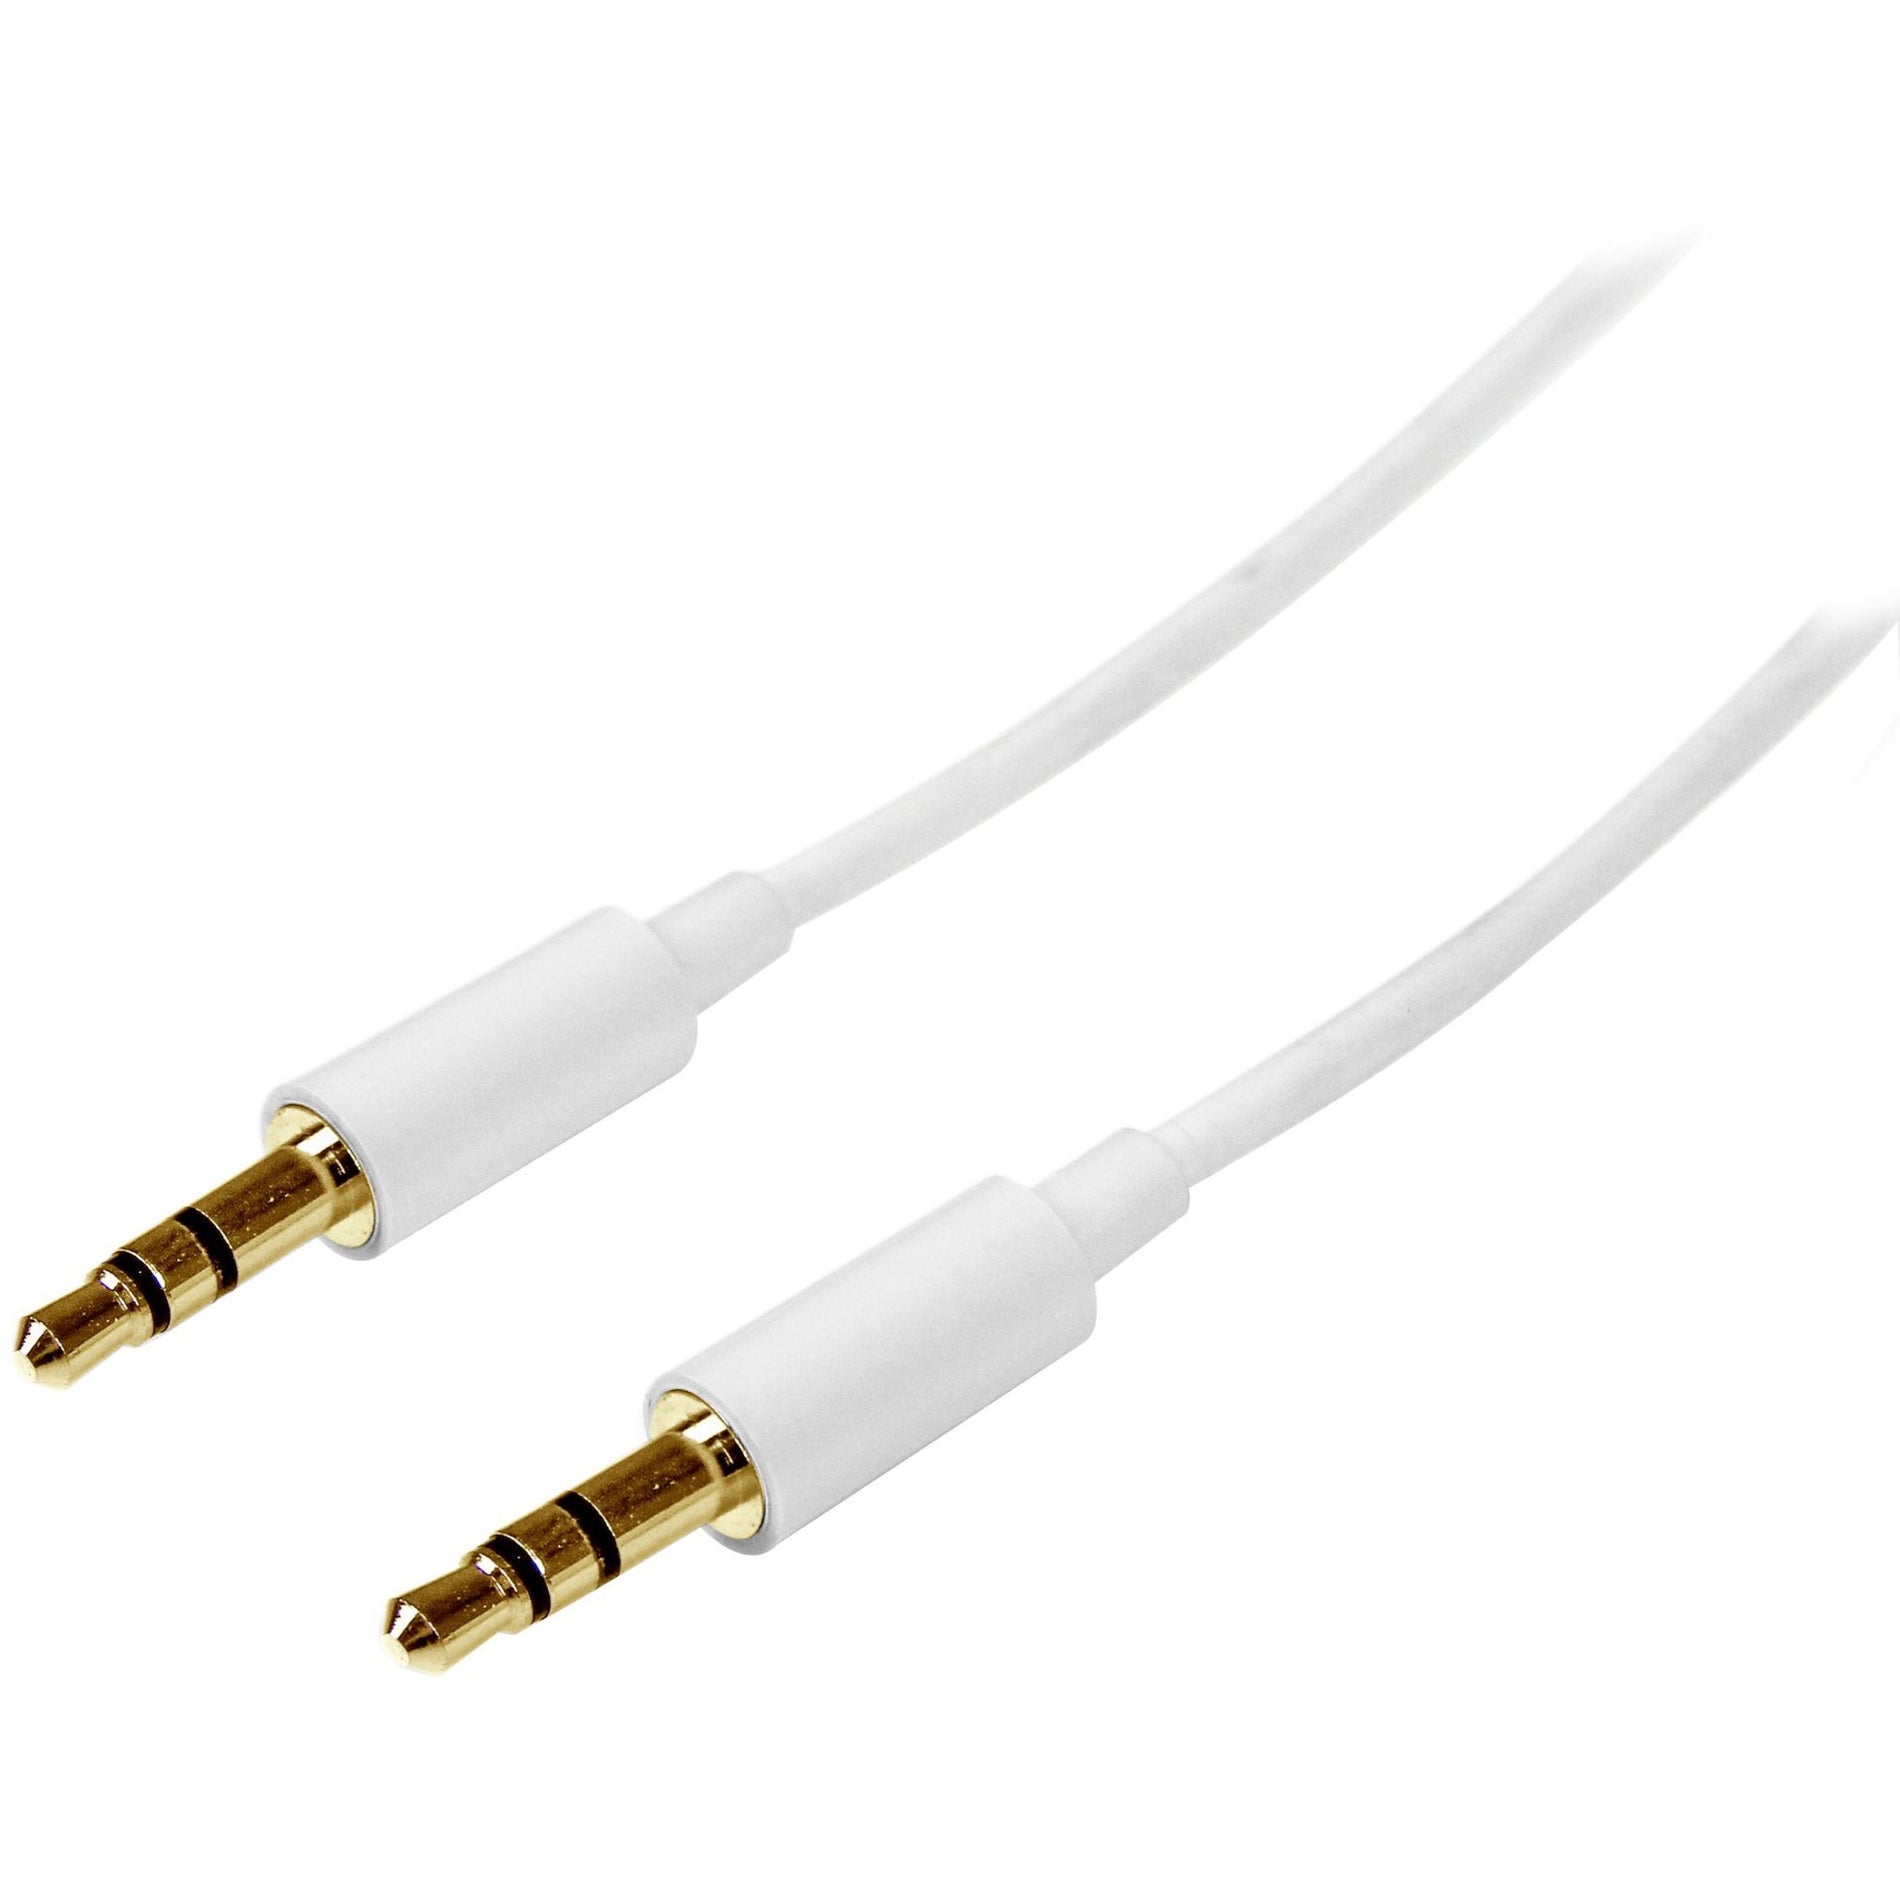 Marca StarTech.com Cable de audio estéreo delgado blanco de 3 m MU3MMMSWH - Macho a macho moldeado conductor de cobre Longitud de 9.84 pies